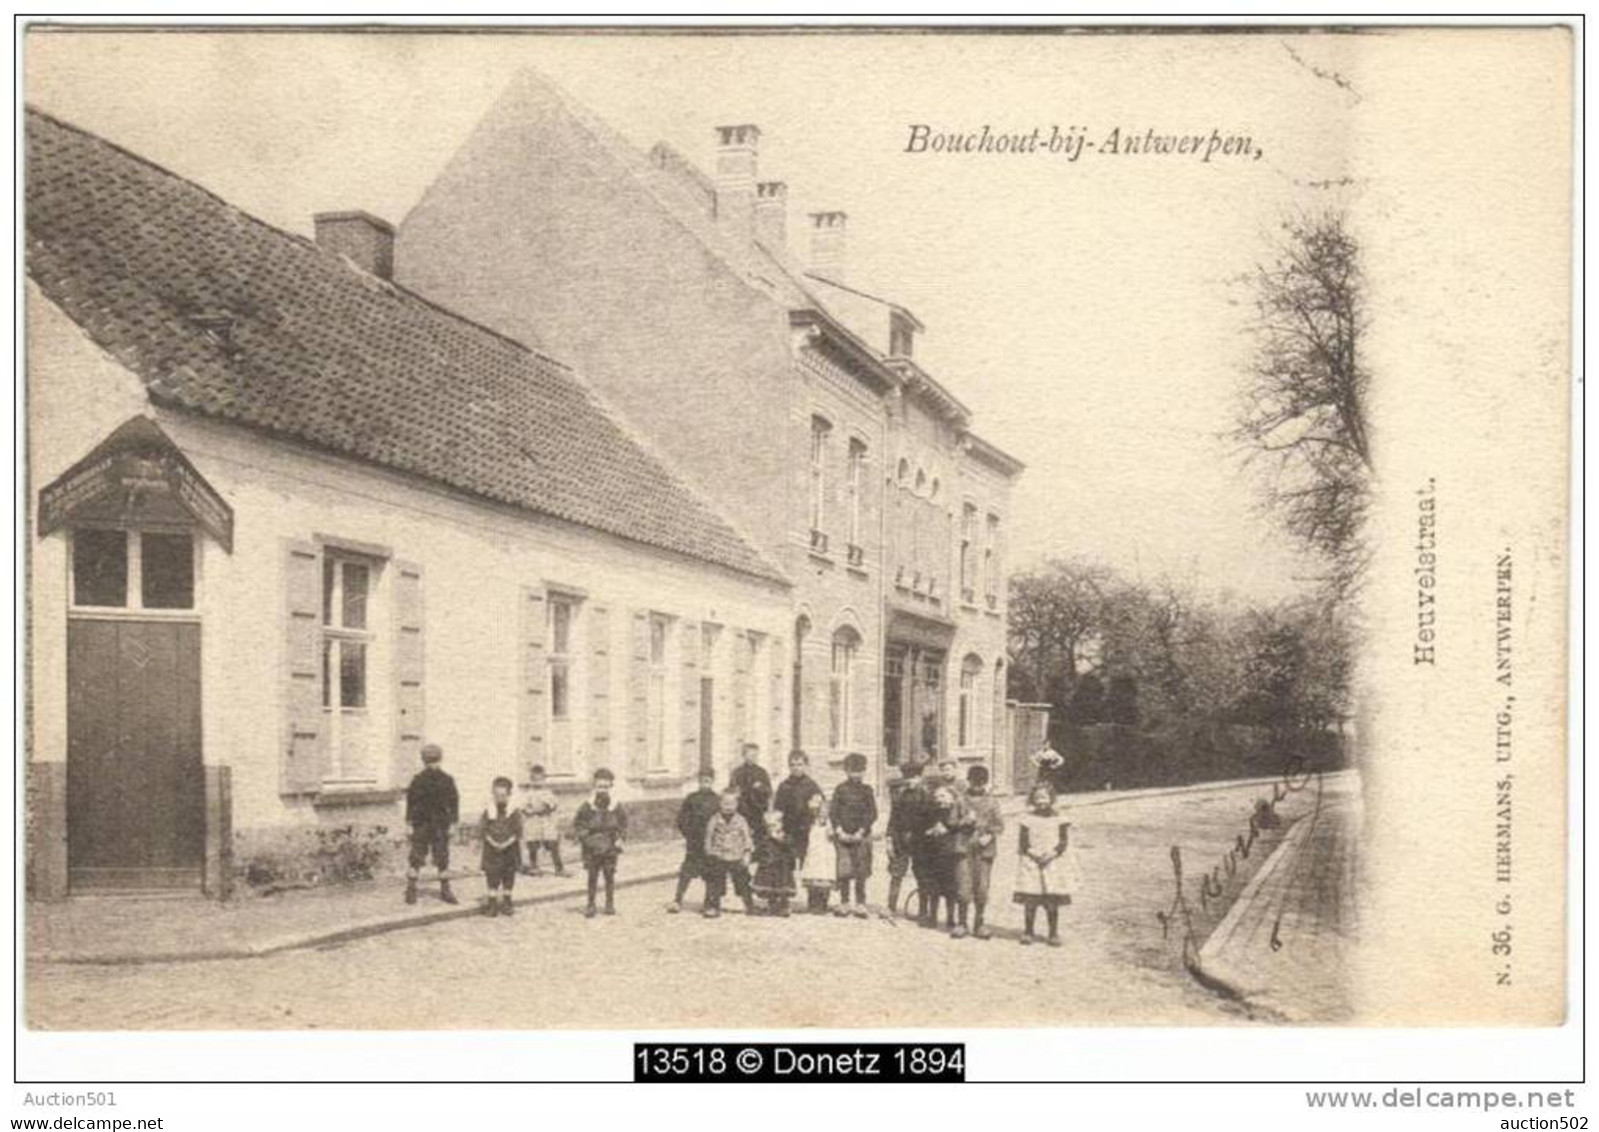 13518g Bouchout-bij-Antwerpen - Heuvelstraat - 1903 - Böchout